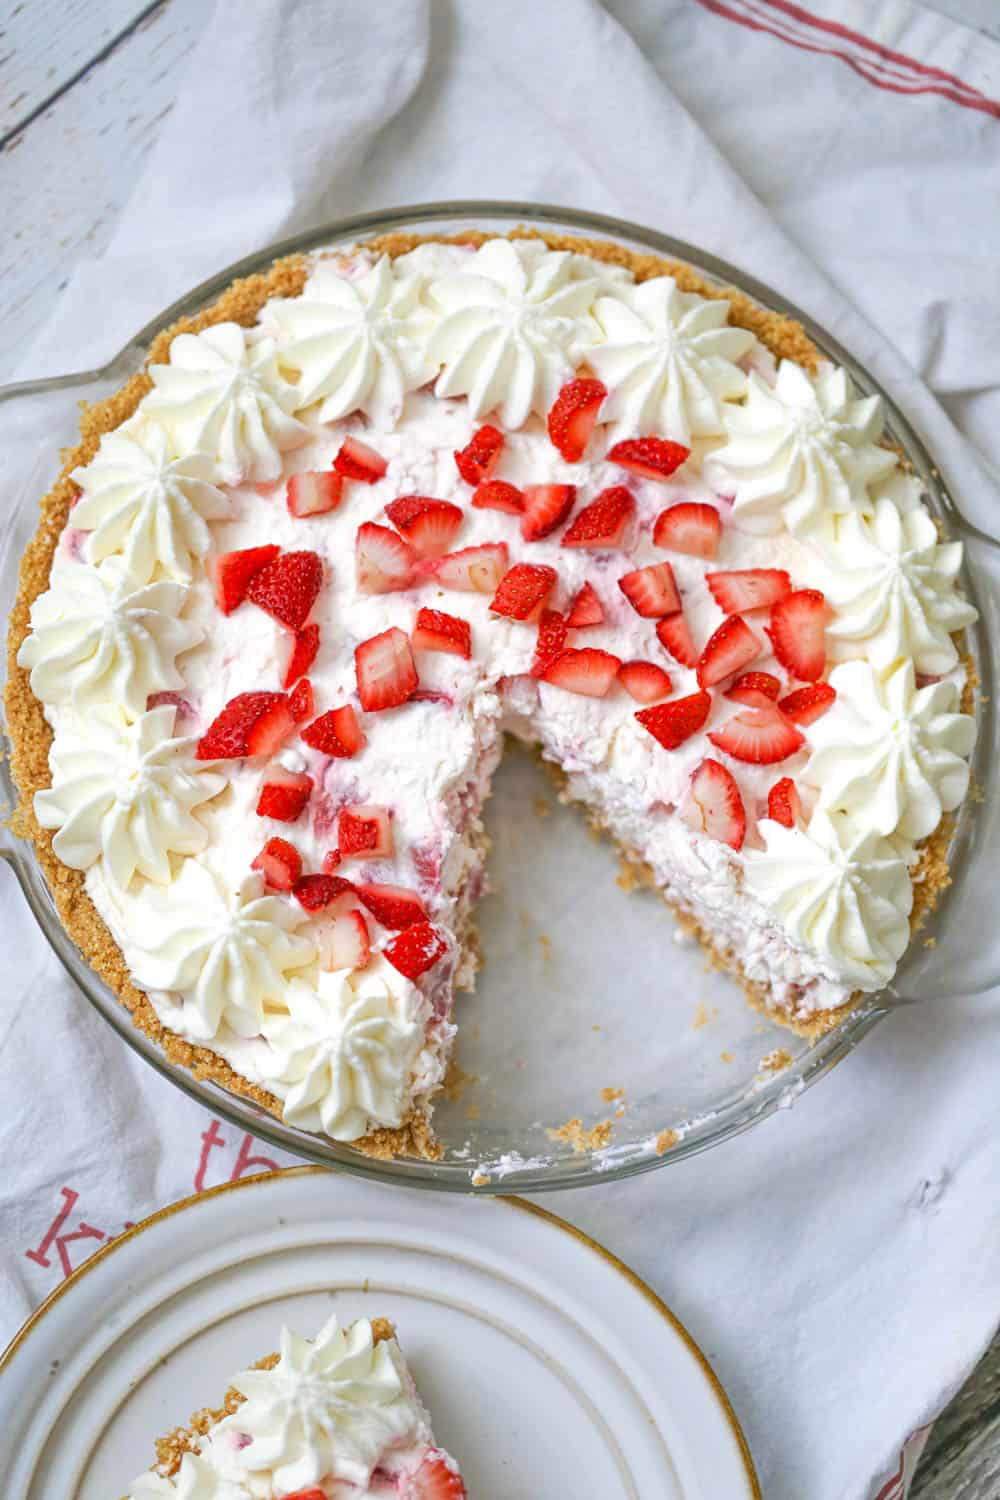 Strawberry Cheesecake Cream Pie